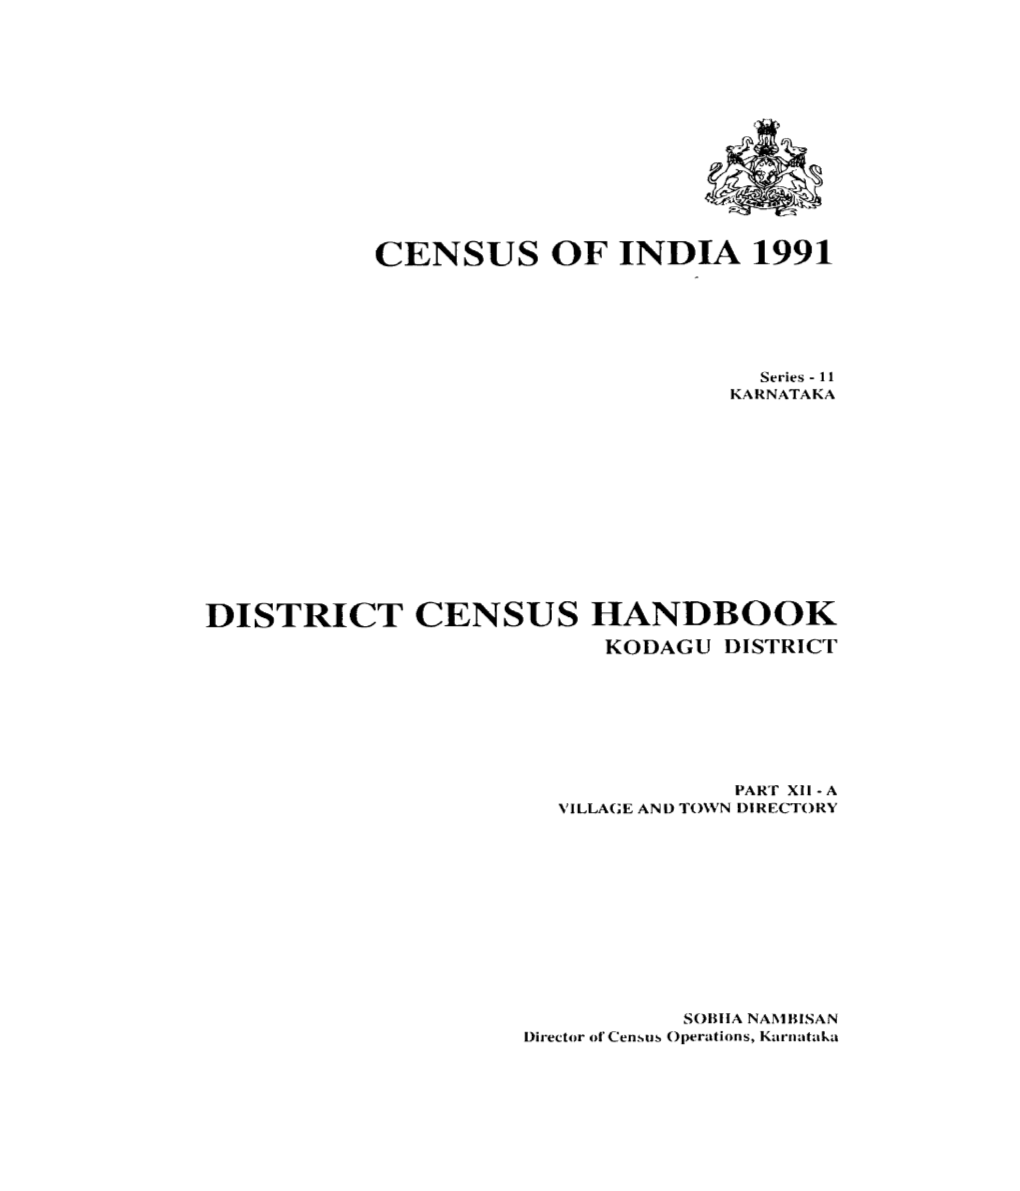 District Census Handbook, Kodagu, Part XII-A, Series-11